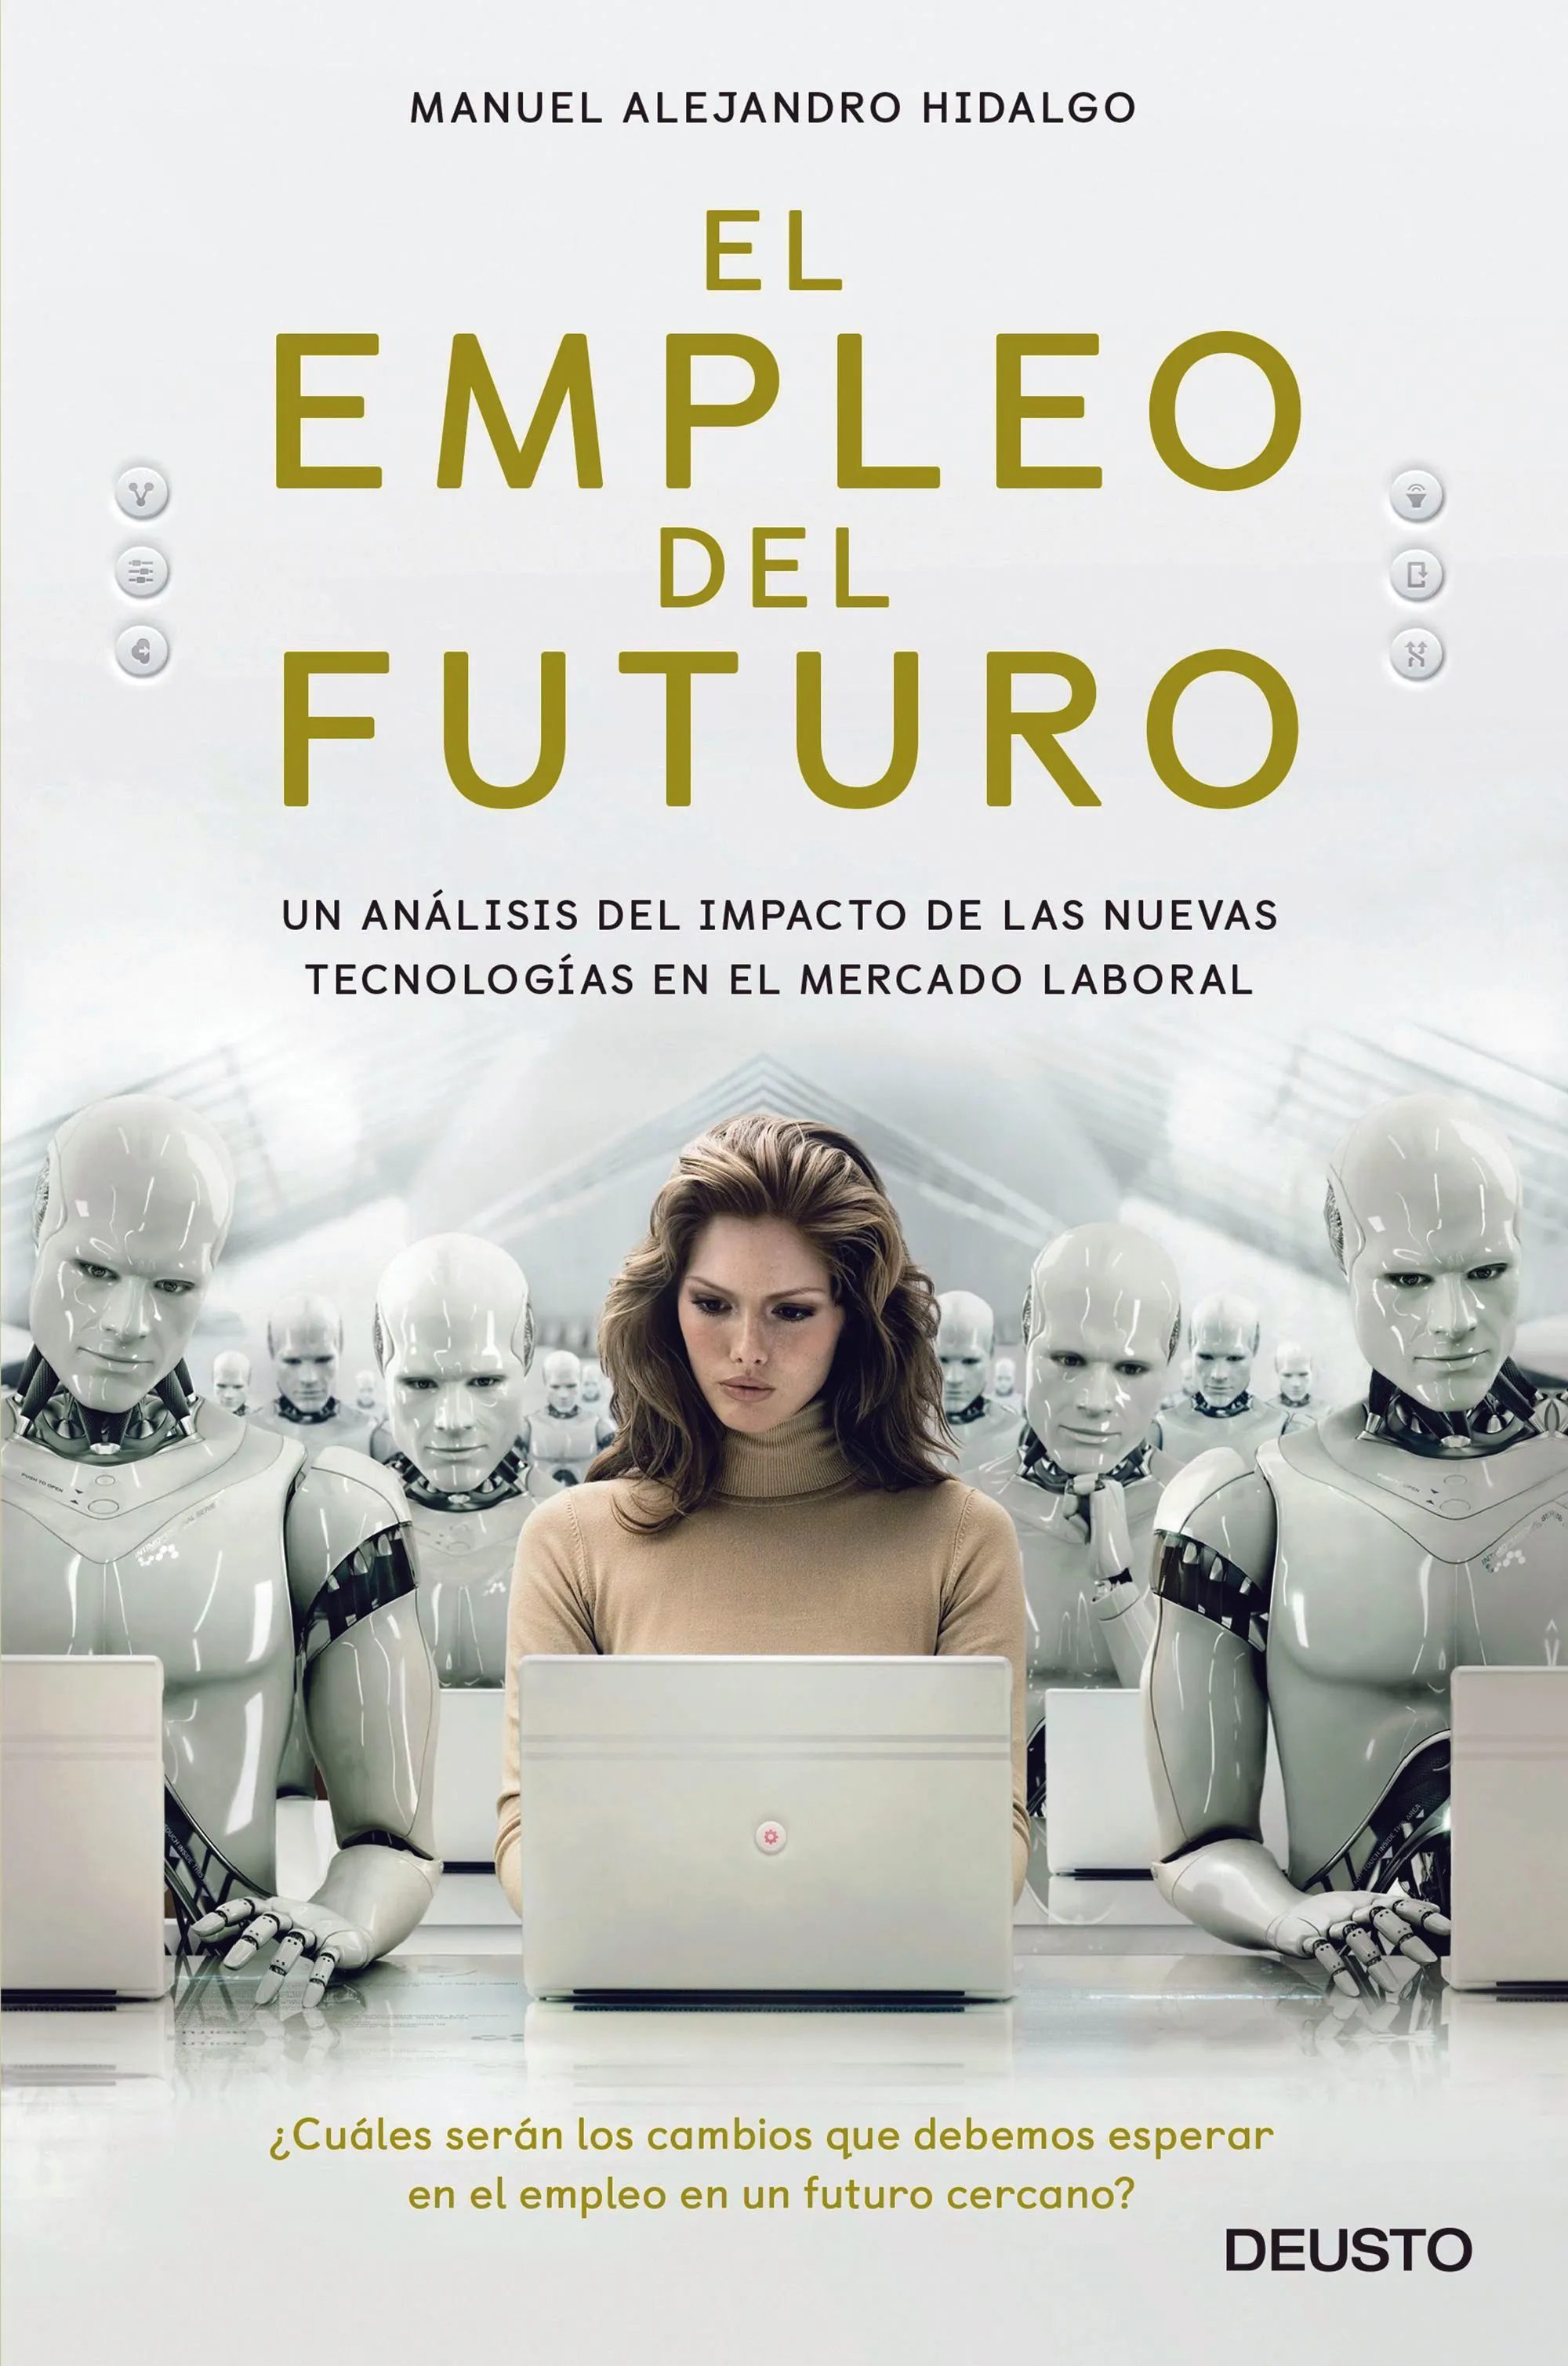 Portada del libro El empleo del futuro de Manuel
Alejandro Hidalgo, 2018.